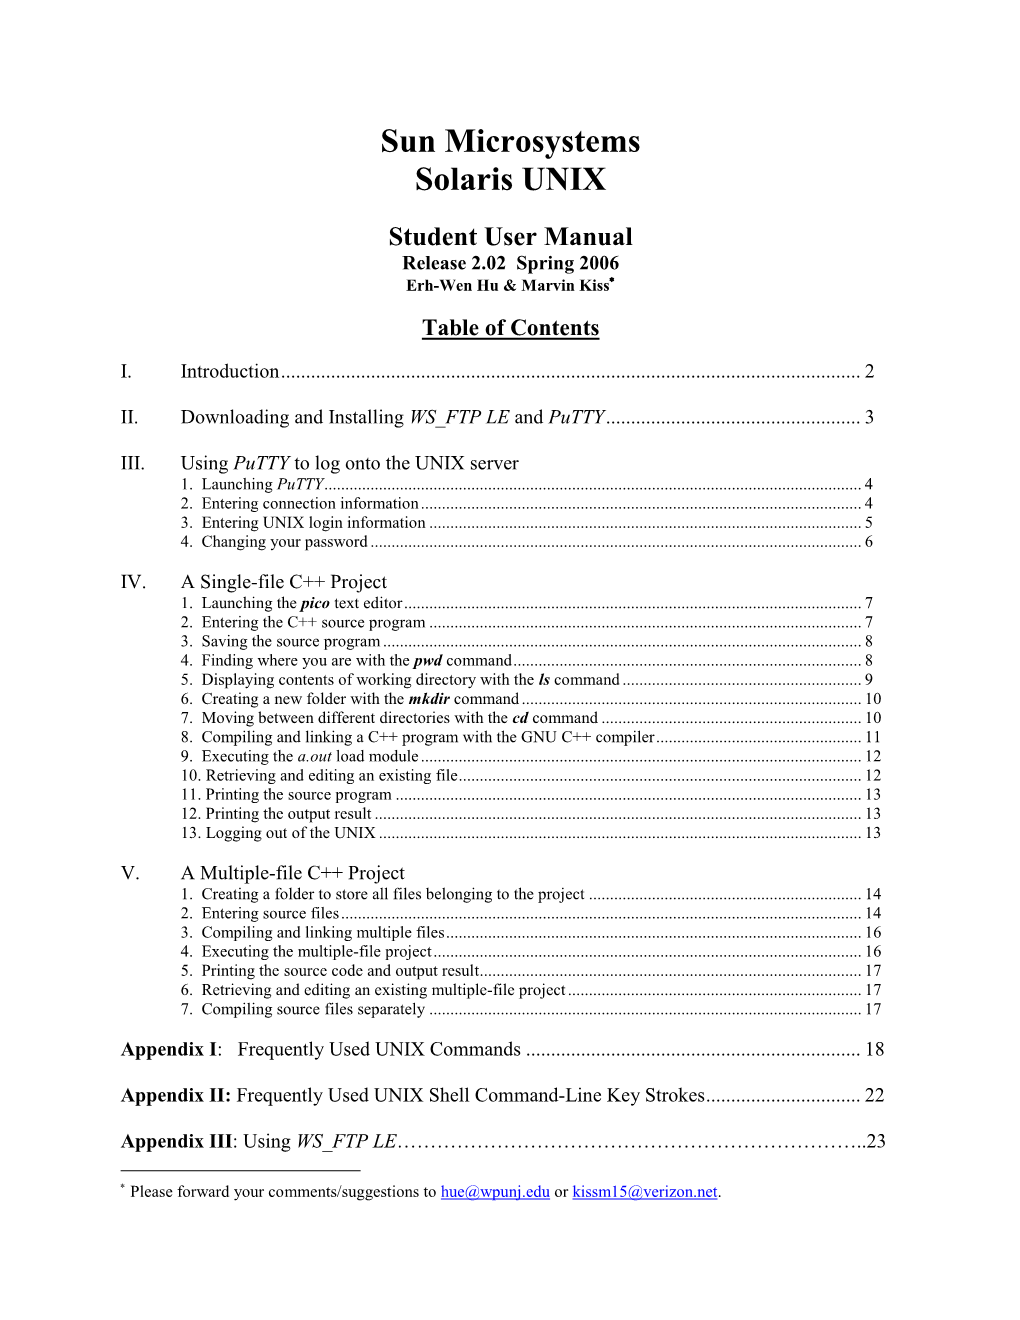 Solaris UNIX Student User Manual